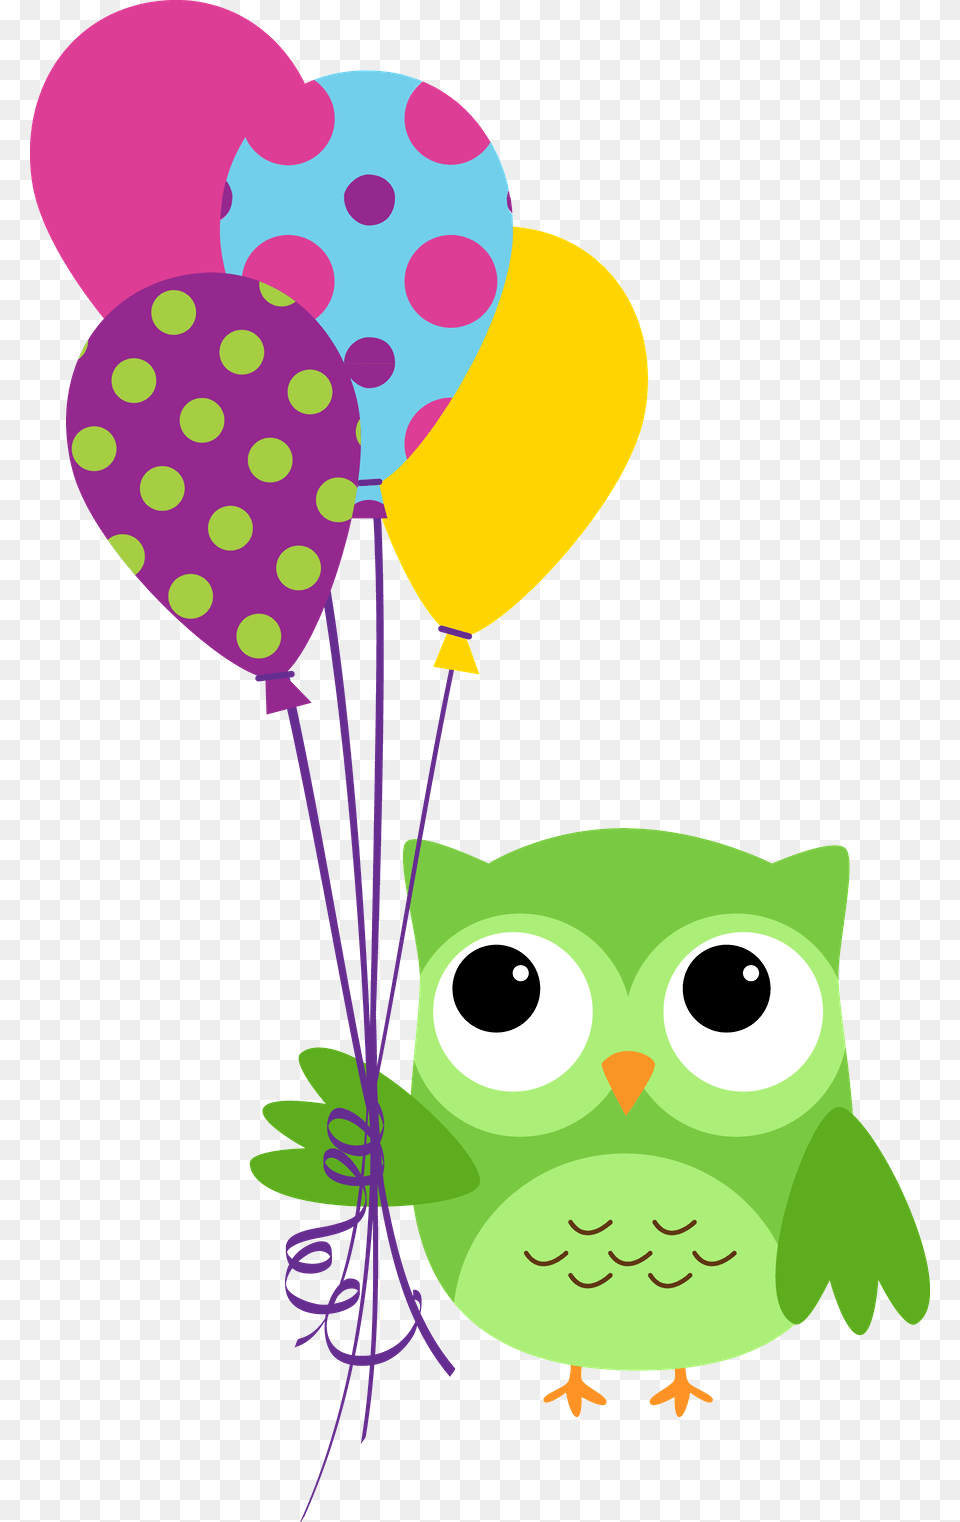 Corujas, Balloon, Animal, Bird Free Transparent Png